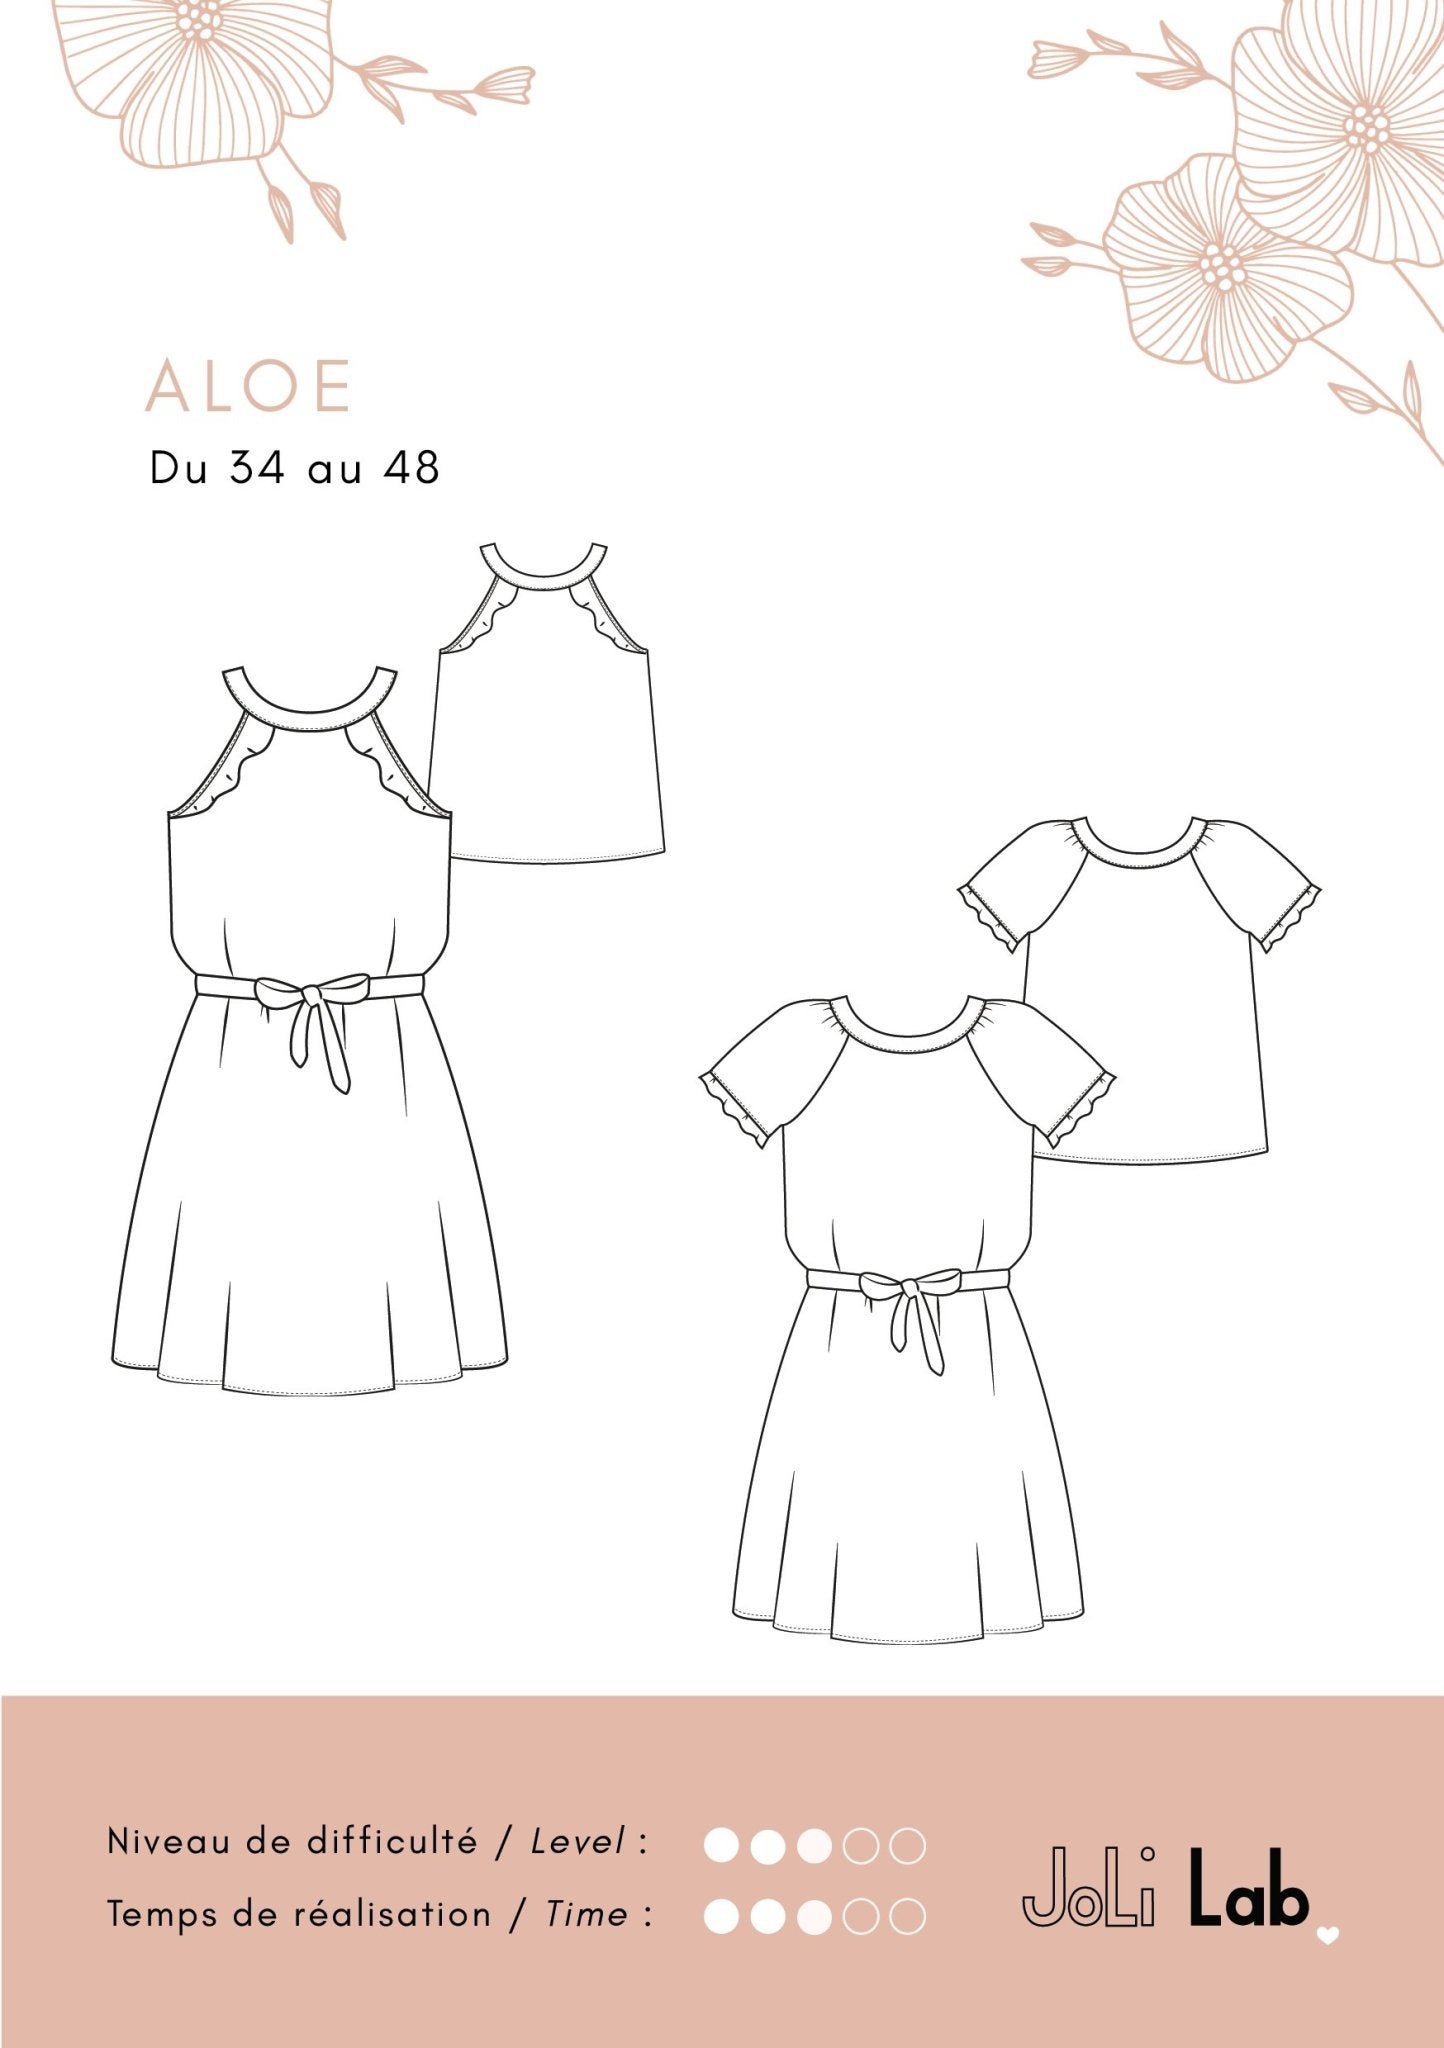 Aloe Dress/Top - pattern PDF or paper - Joli Lab